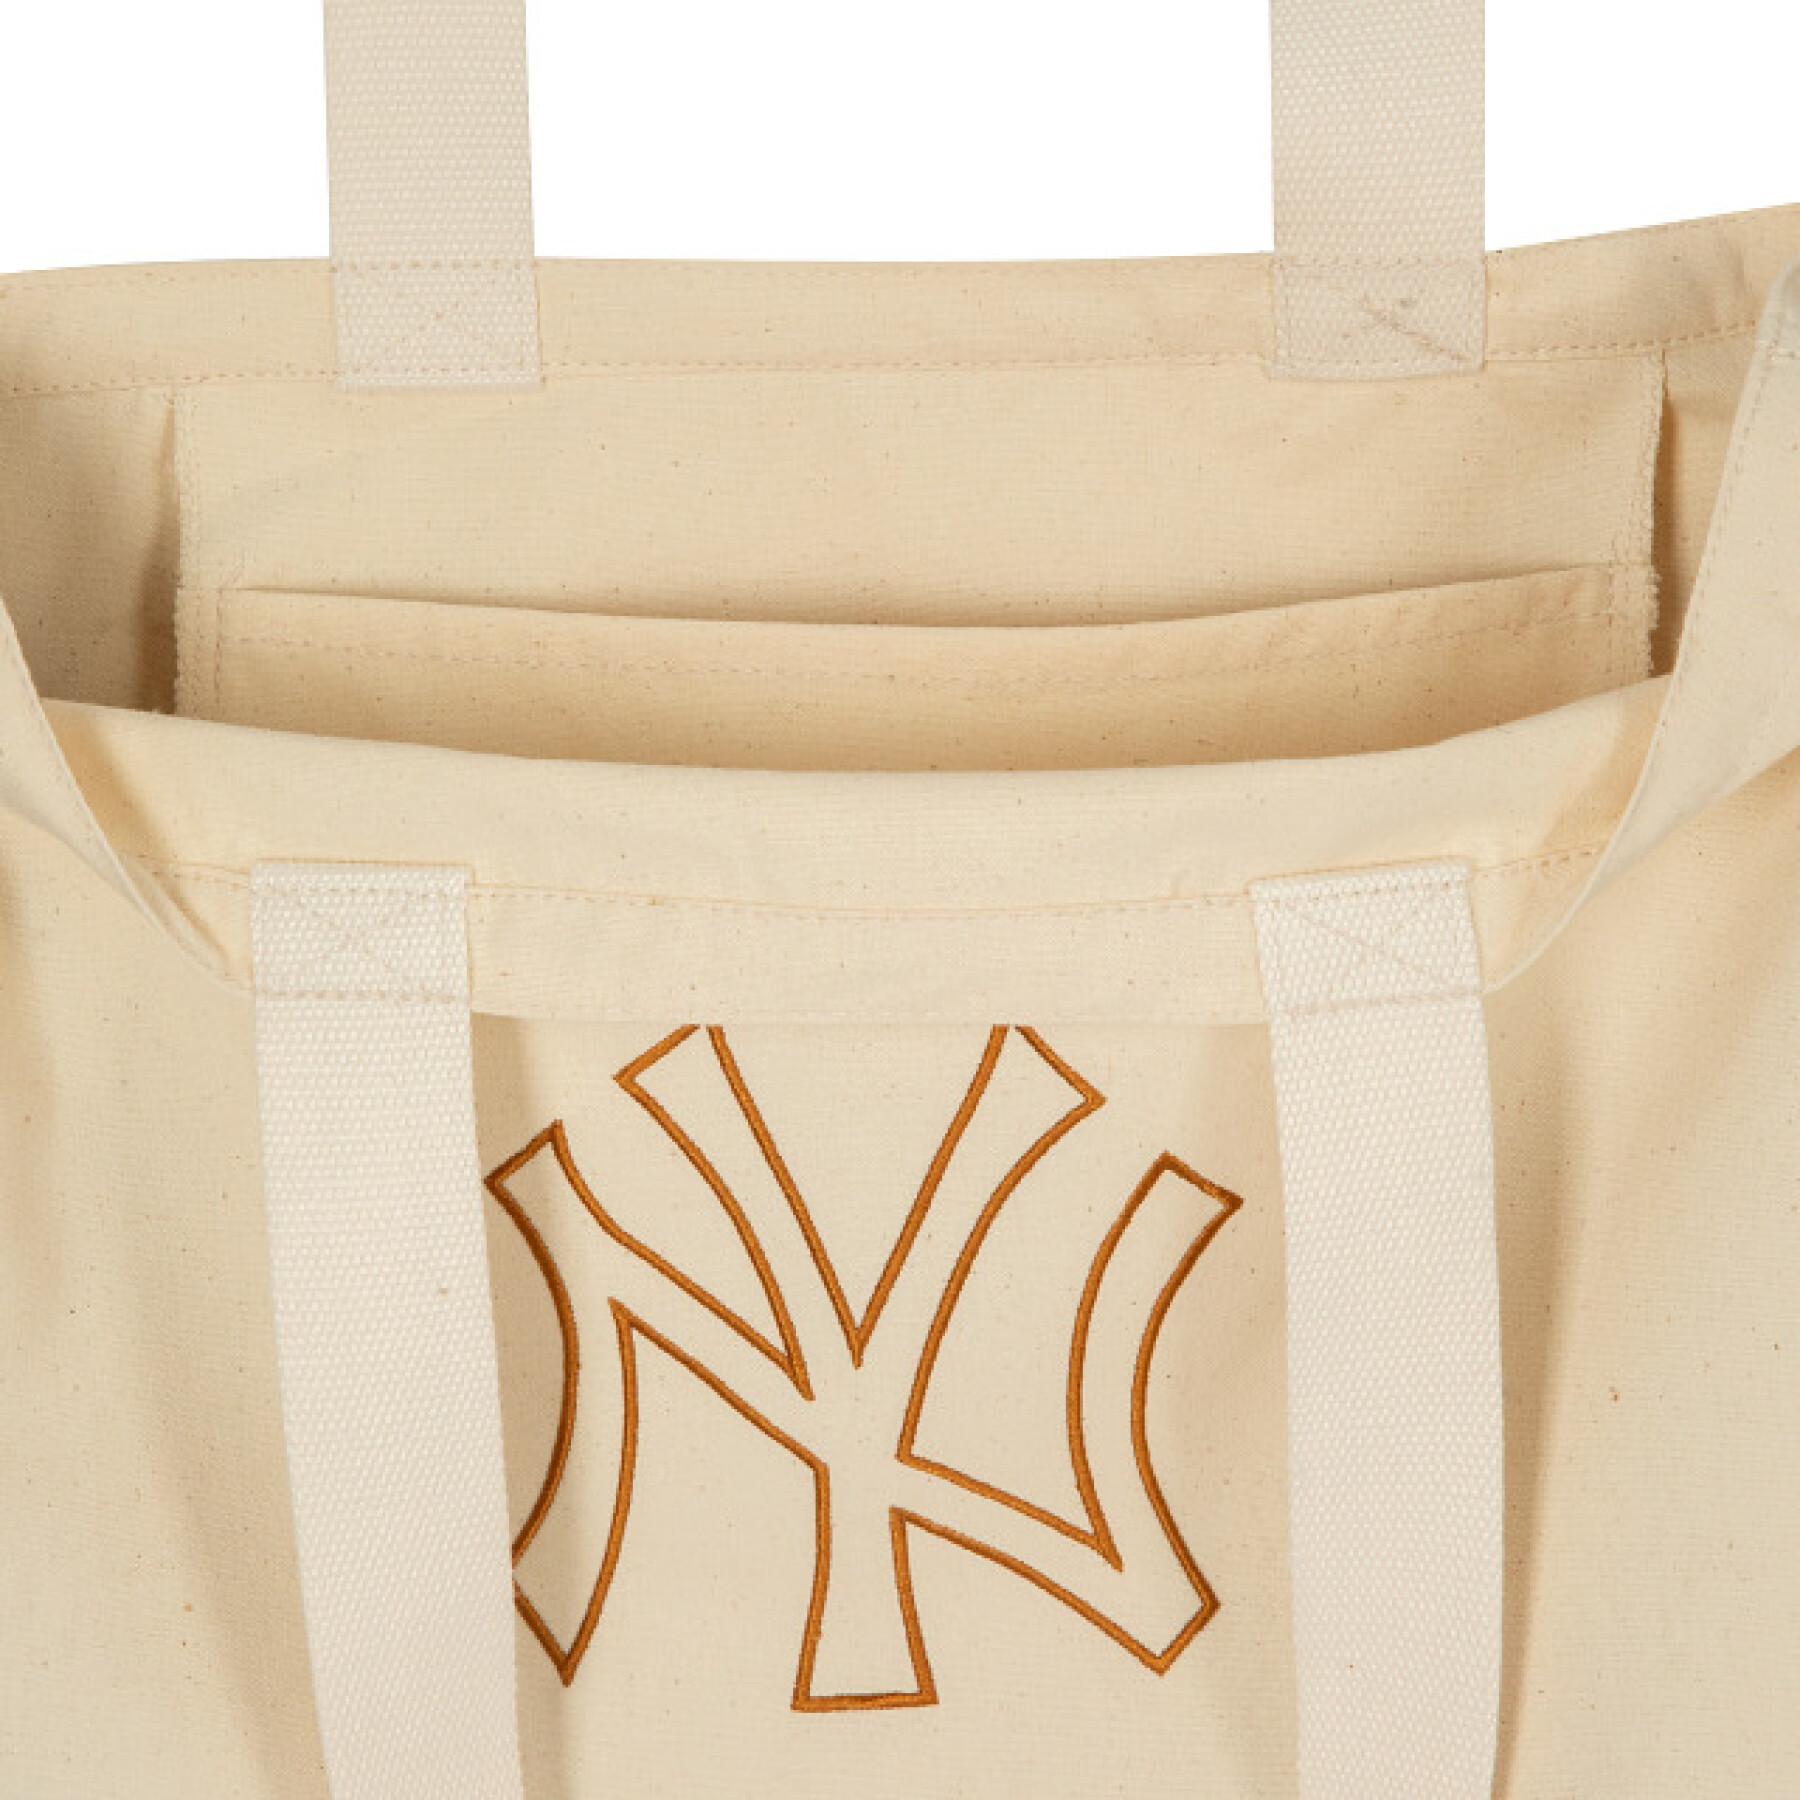 Tote bag New York Yankees League Essential